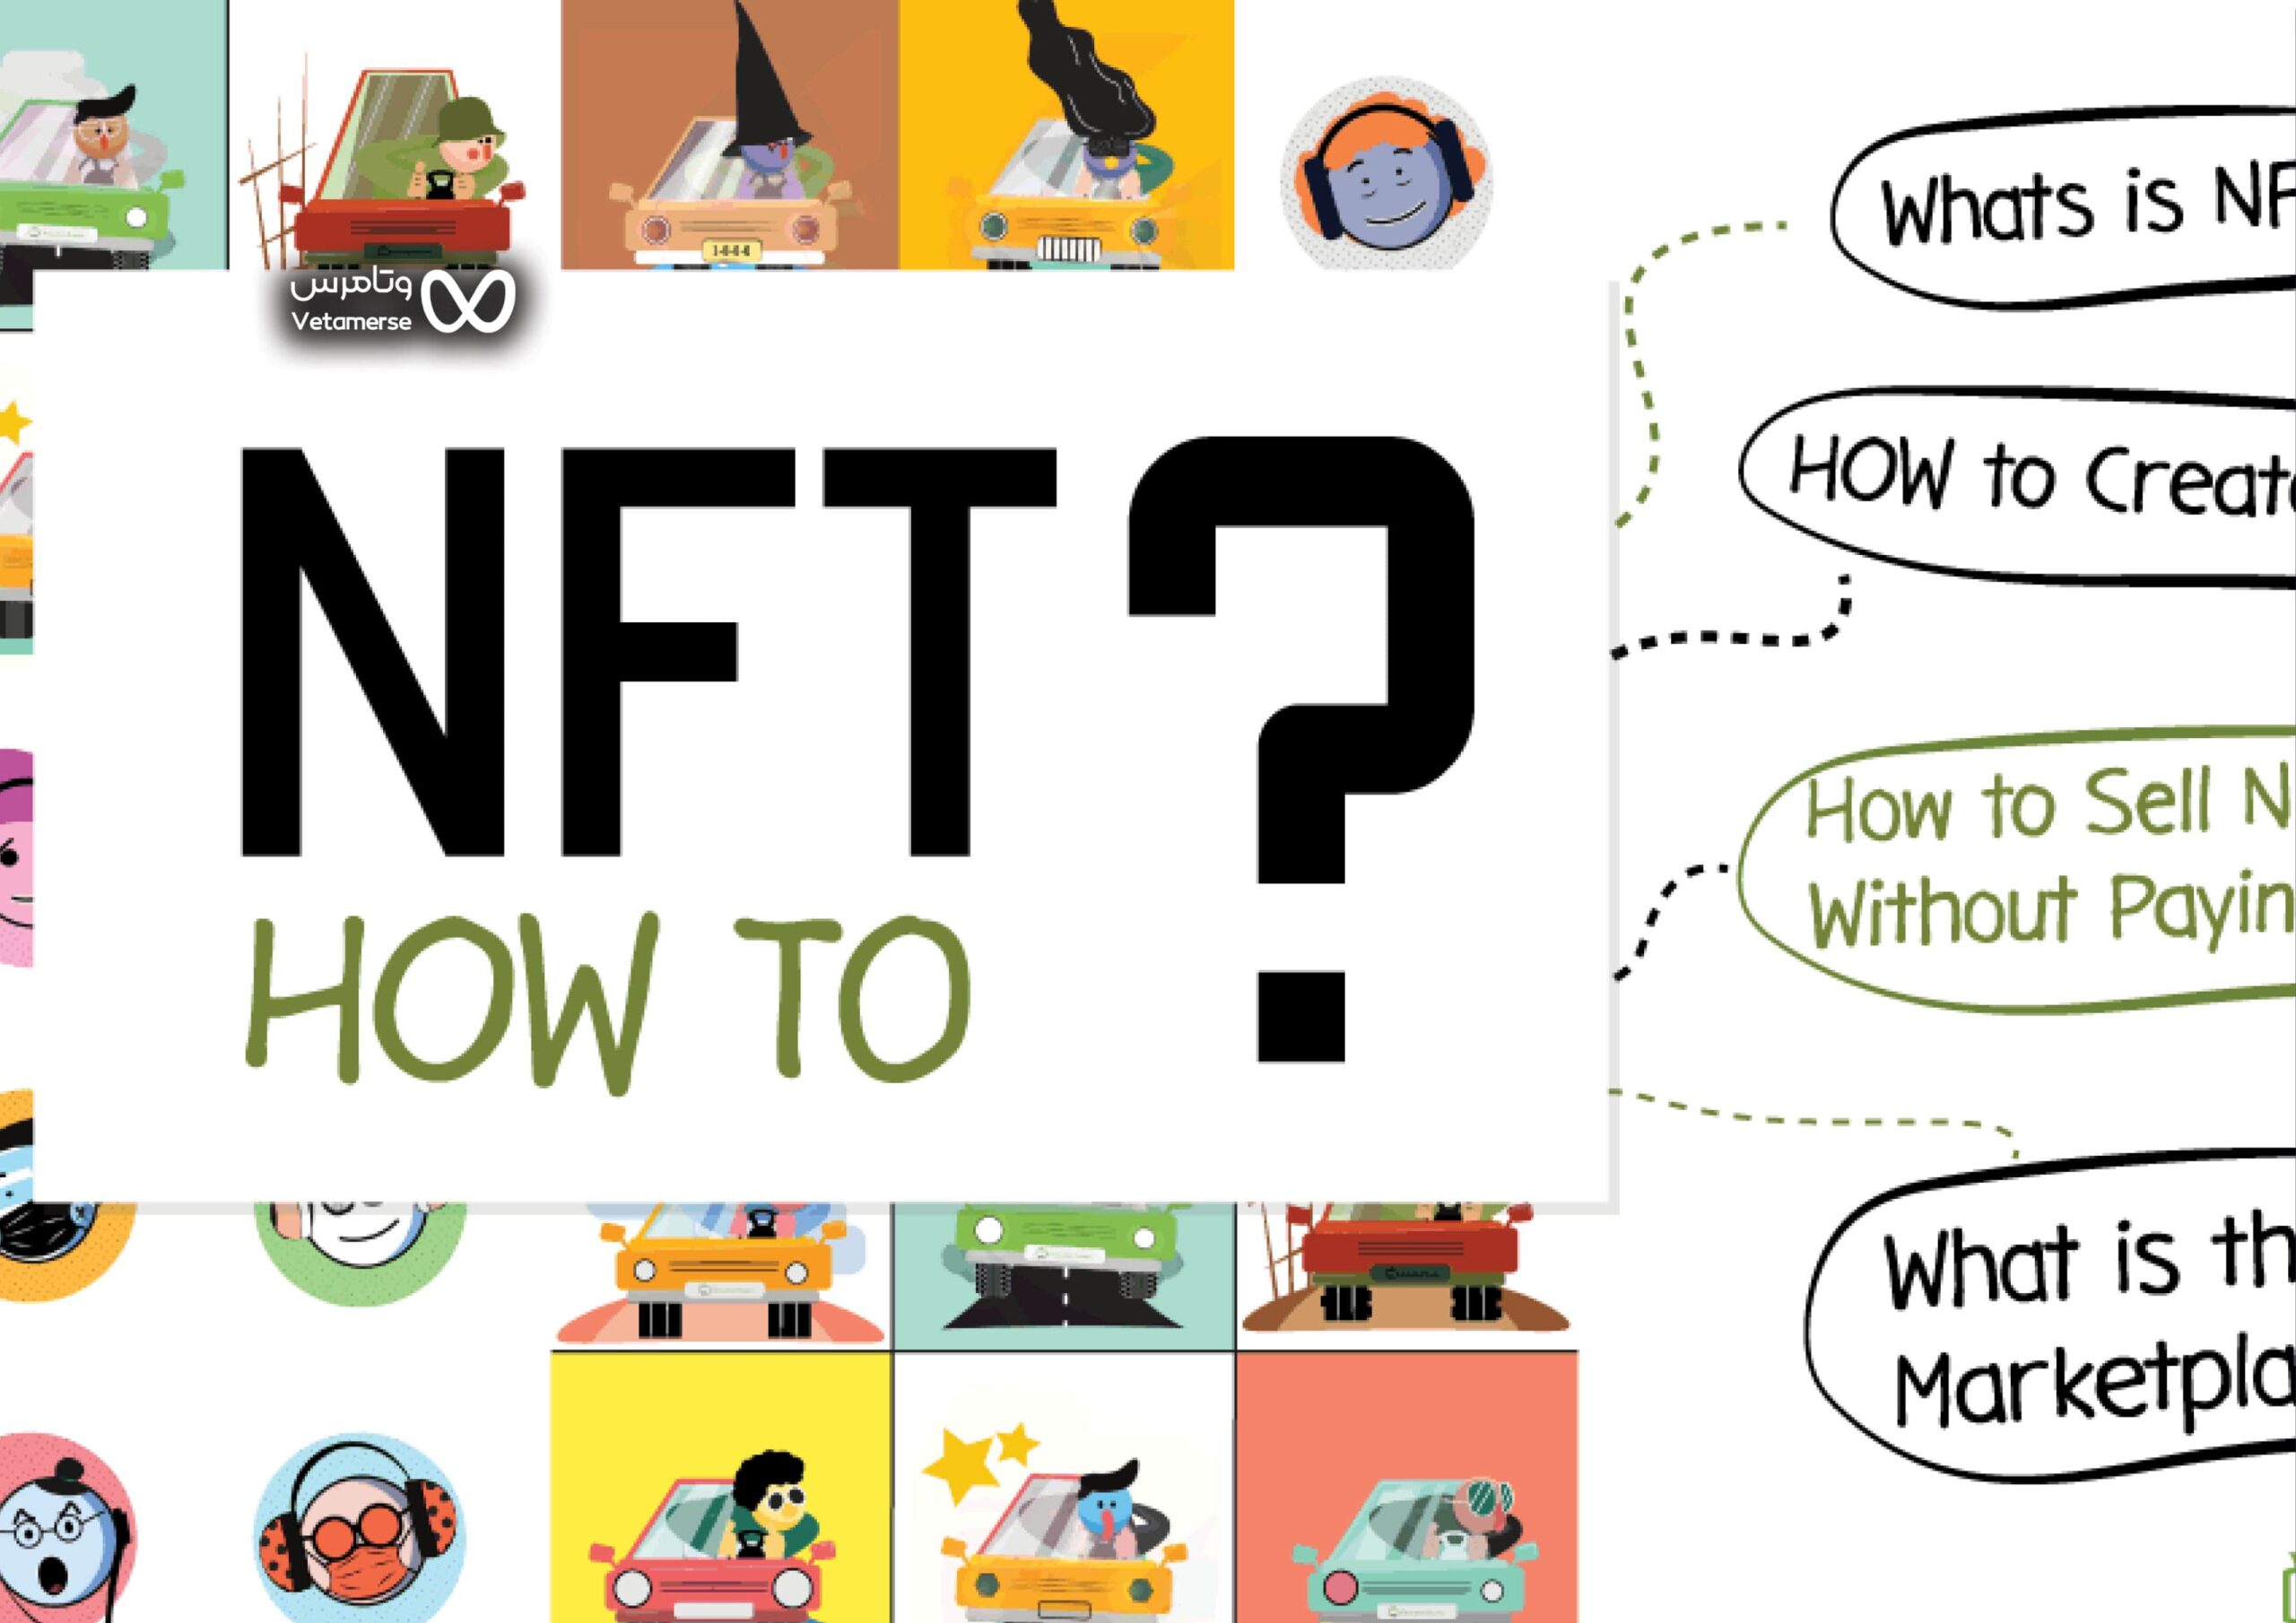 قبل از بررسی به بهترین سایت های خرید و فروش NFT، باید از خود بپرسید که هدف شما از ایجاد NFT چیست